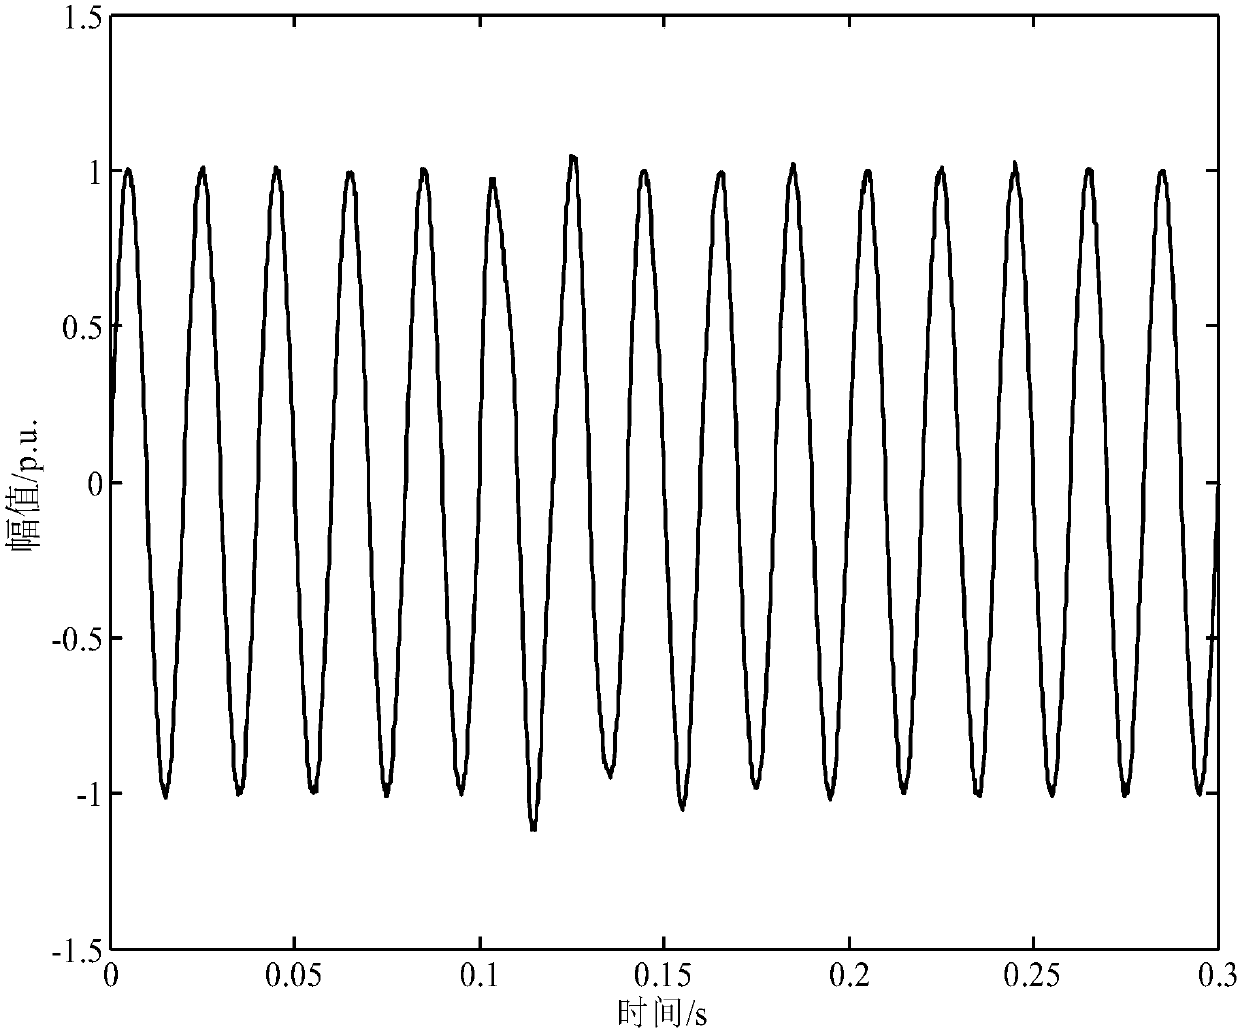 Transient-oscillation-parameter identification method based on morphological filtering and blind source separation